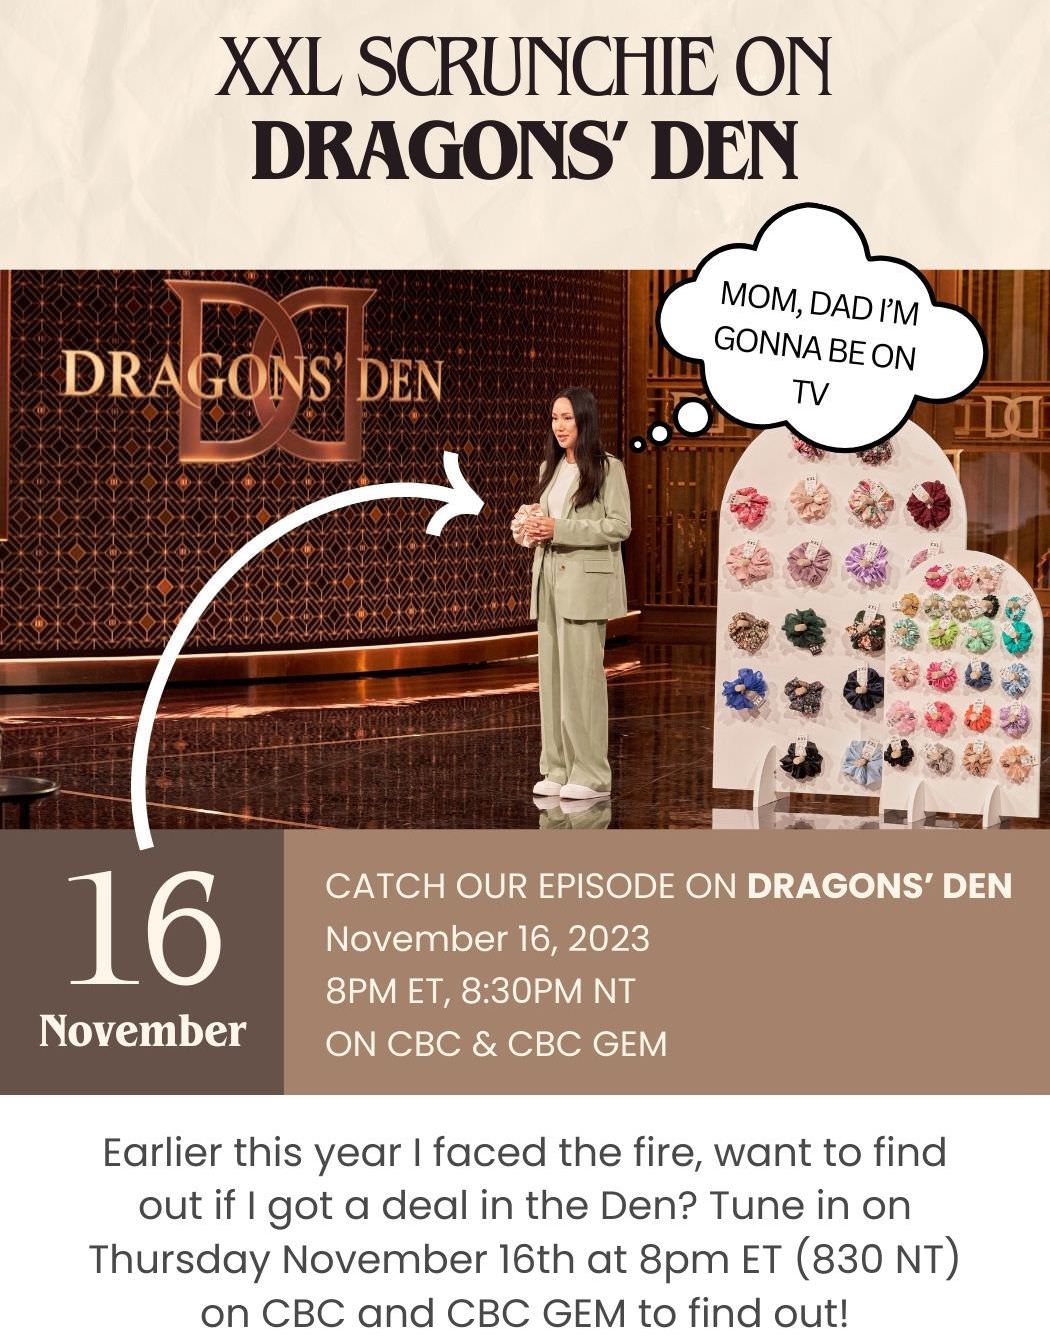 La PDG de XXL Scrunchie, Tina Nguyen, a présenté son discours sur Dragons' Den Canada. Il sera diffusé dans le nouvel épisode 9 de la saison 18. Découvrez si elle a obtenu un accord ou non alors qu'elle faisait face à l'incendie dans la tanière.